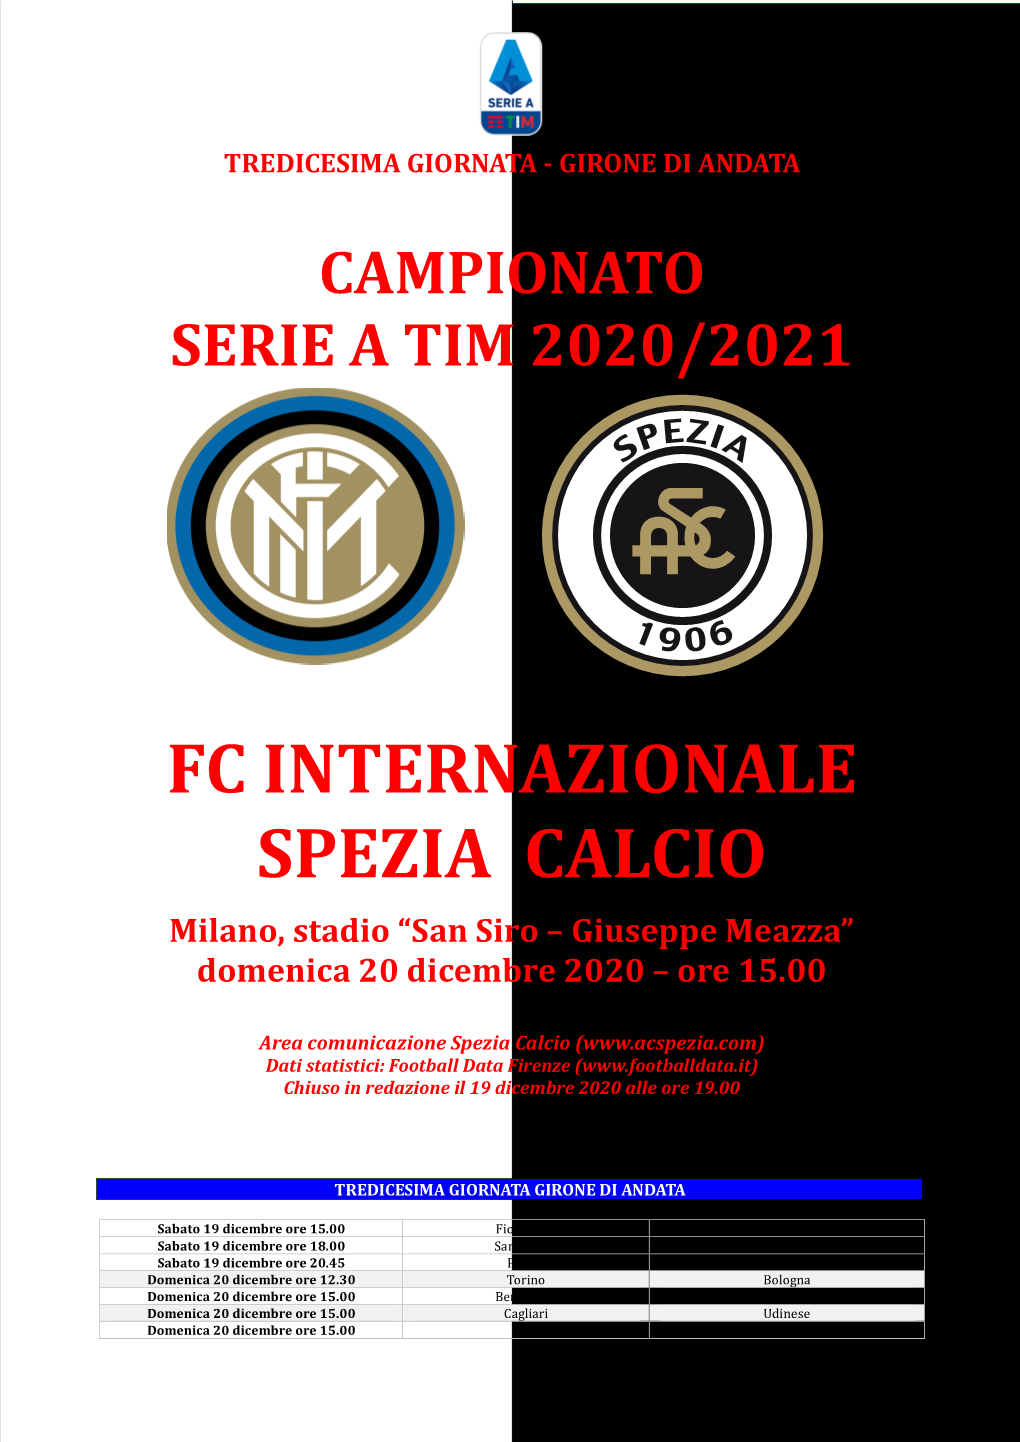 Match Report Inter-Spezia 13° Turno Serie A